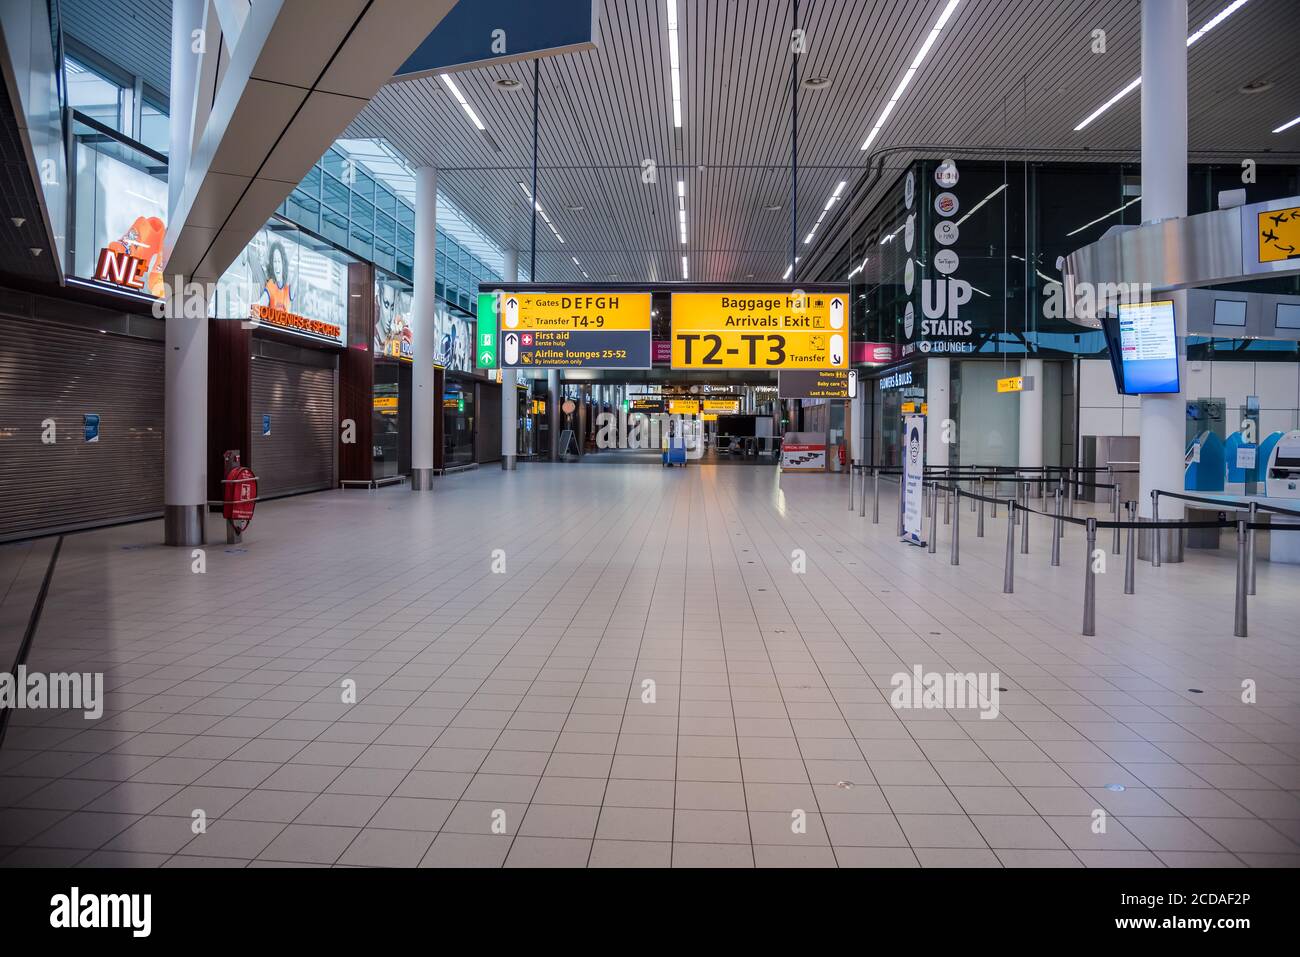 Aeroporto di Schiphol, Paesi Bassi - 27 giugno 2020: Sala deserta con negozi chiusi a causa di restrizioni di viaggio a causa della pandemia di covid-19 Foto Stock